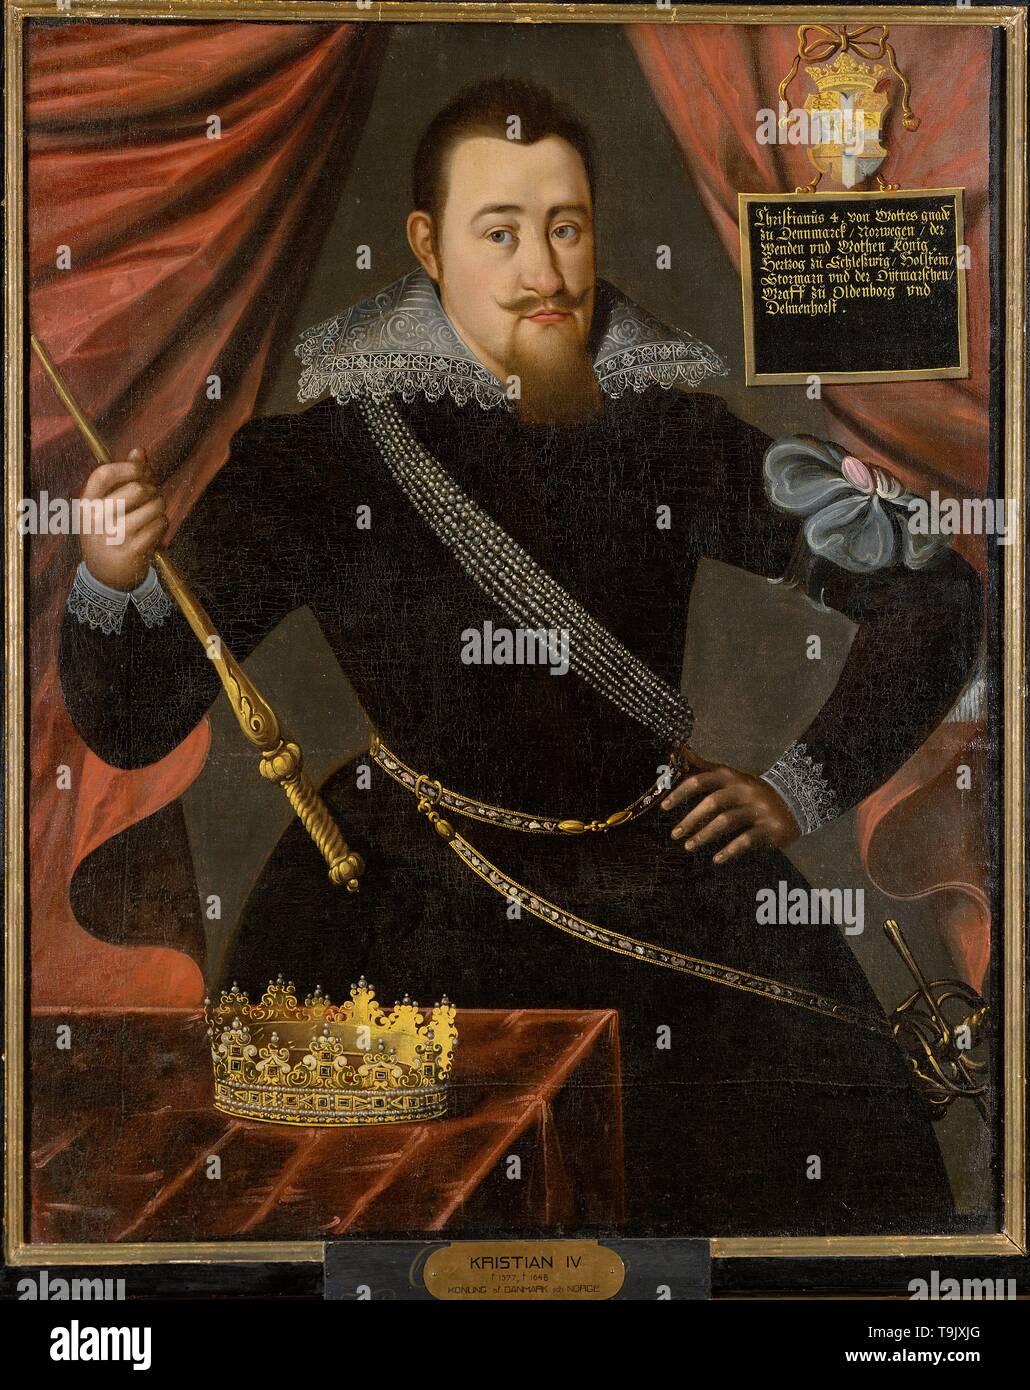 Porträt von König Christian IV. von Dänemark (1577-1648). Museum: Nationalmuseum Stockholm. Autor: anonym. Stockfoto